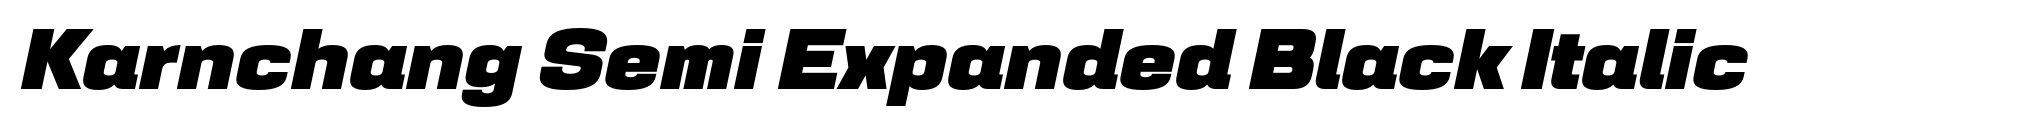 Karnchang Semi Expanded Black Italic image